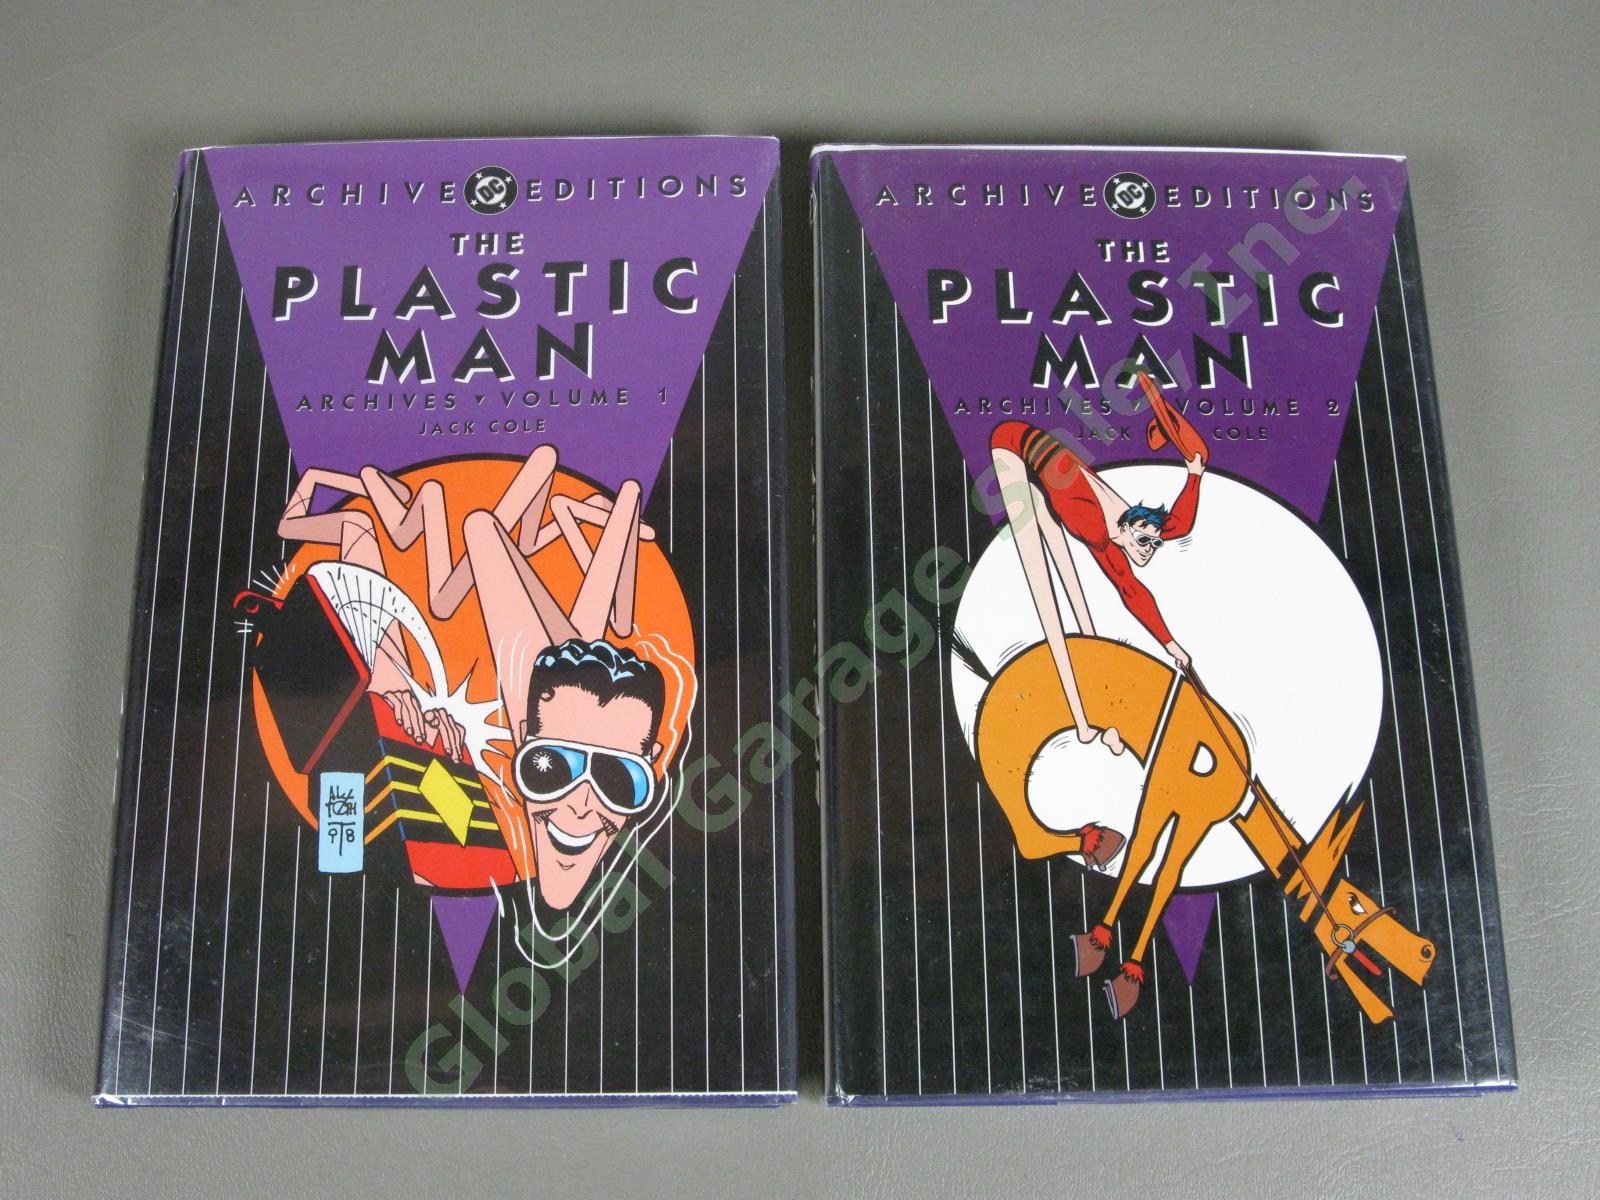 NEW DC Archives Plastic Man Volumes 1-8 Complete Comic Book Set Jack Cole MINT 1